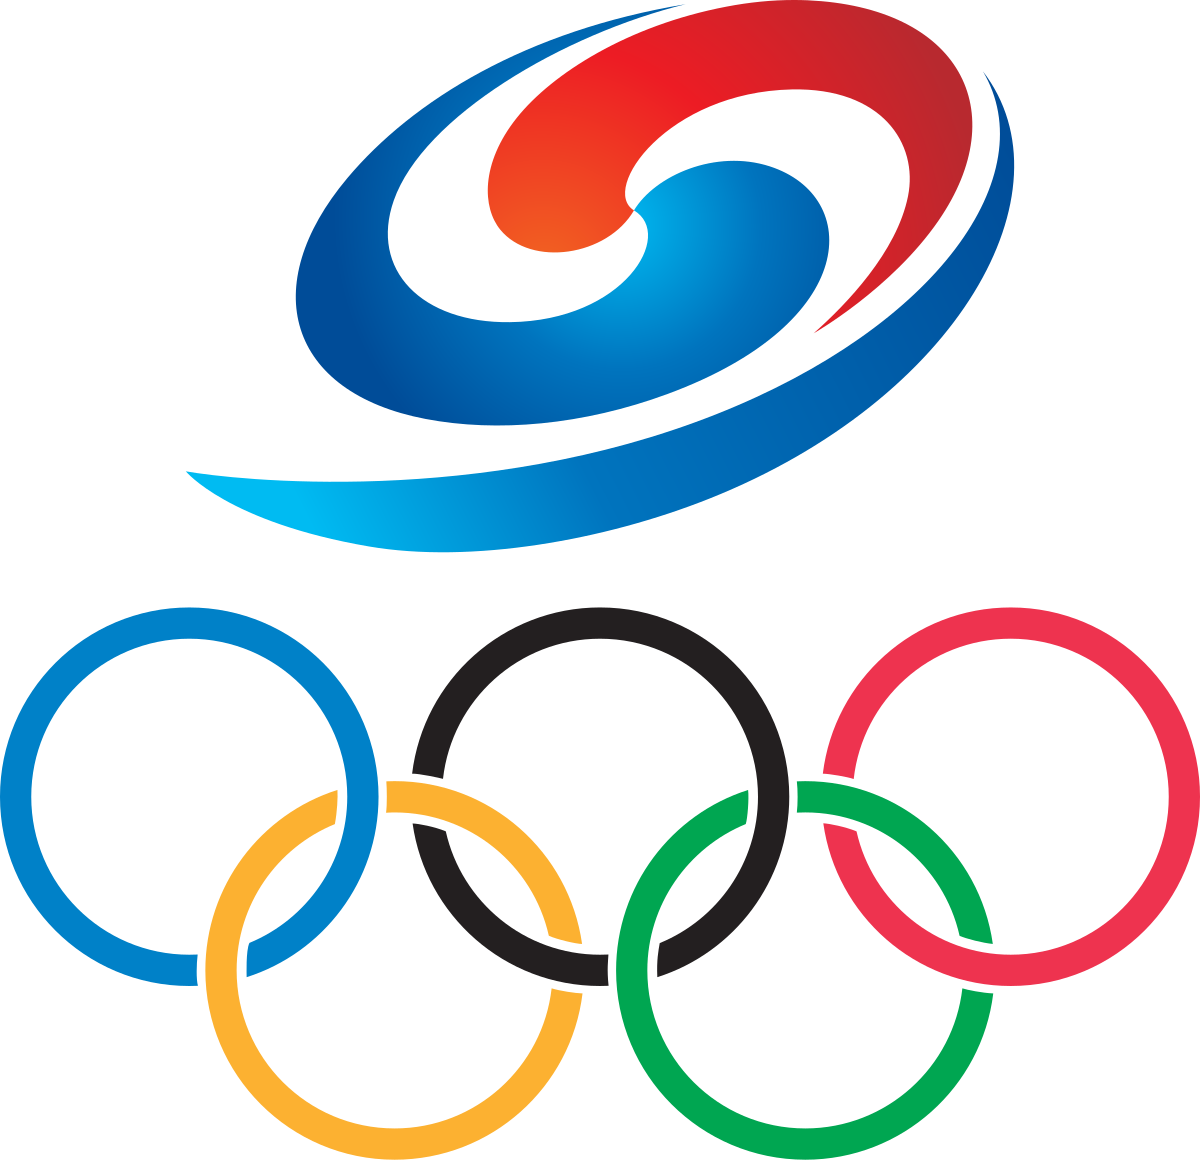 Герб спорта. Эмблема Олимпийских игр кольца. Олимпийский символ. Символ спорта. Символ Спарты.